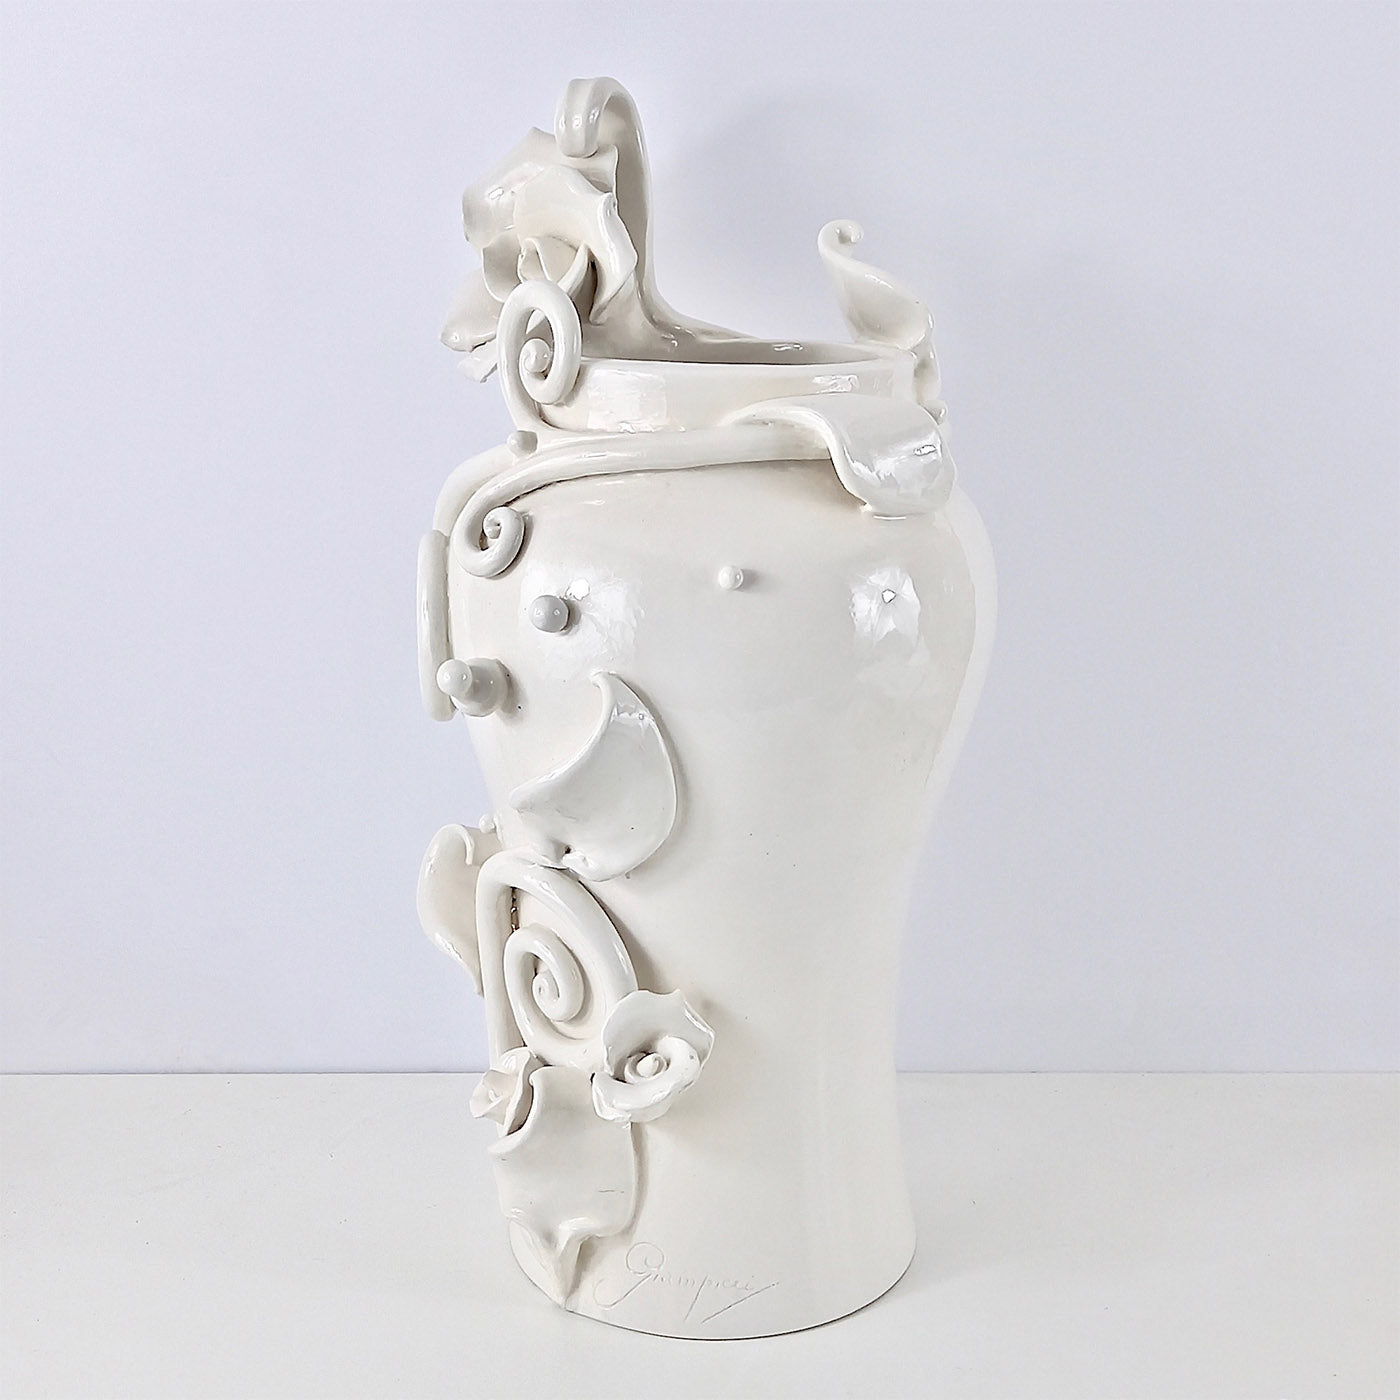 Alice's Rose's White Ceramic Vase - Alternative view 1